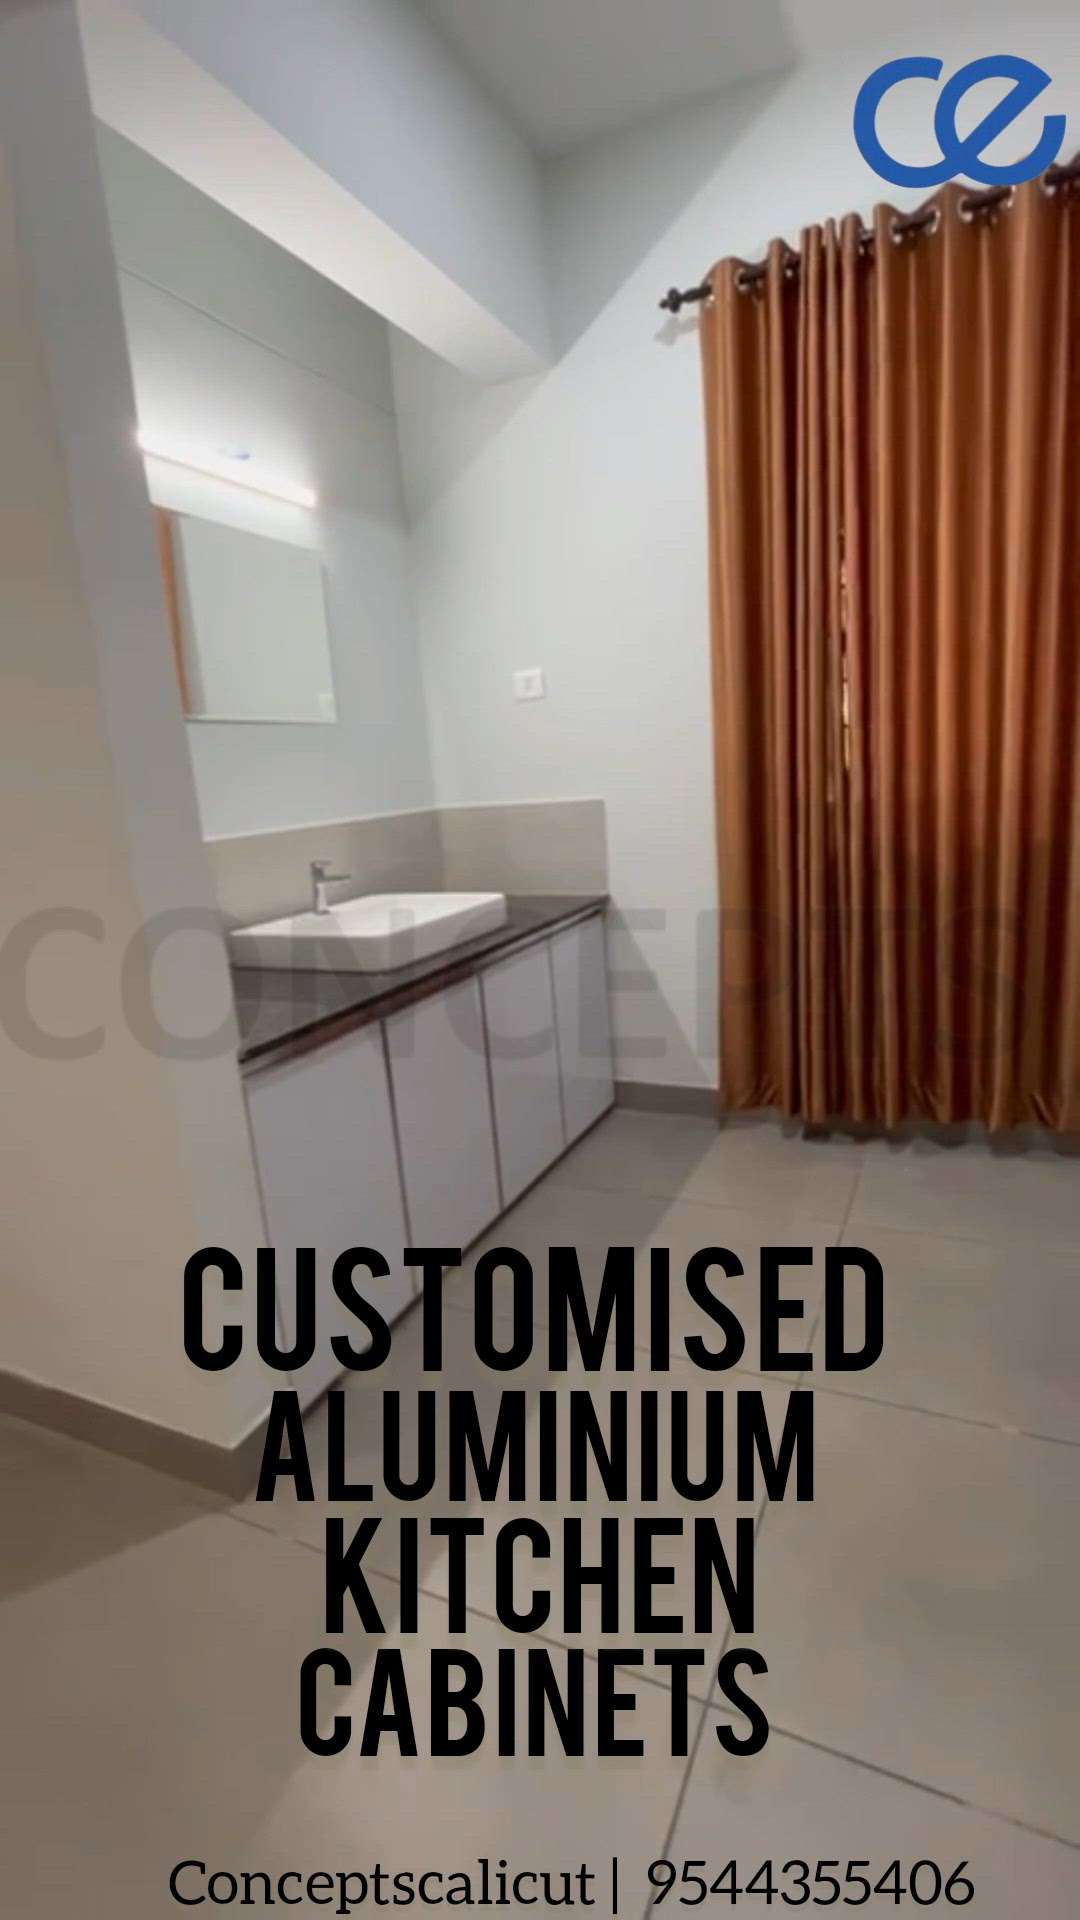 Kitchen Cabinets in Aluminium

 #KitchenCabinet  #InteriorDesigner #homeinterior